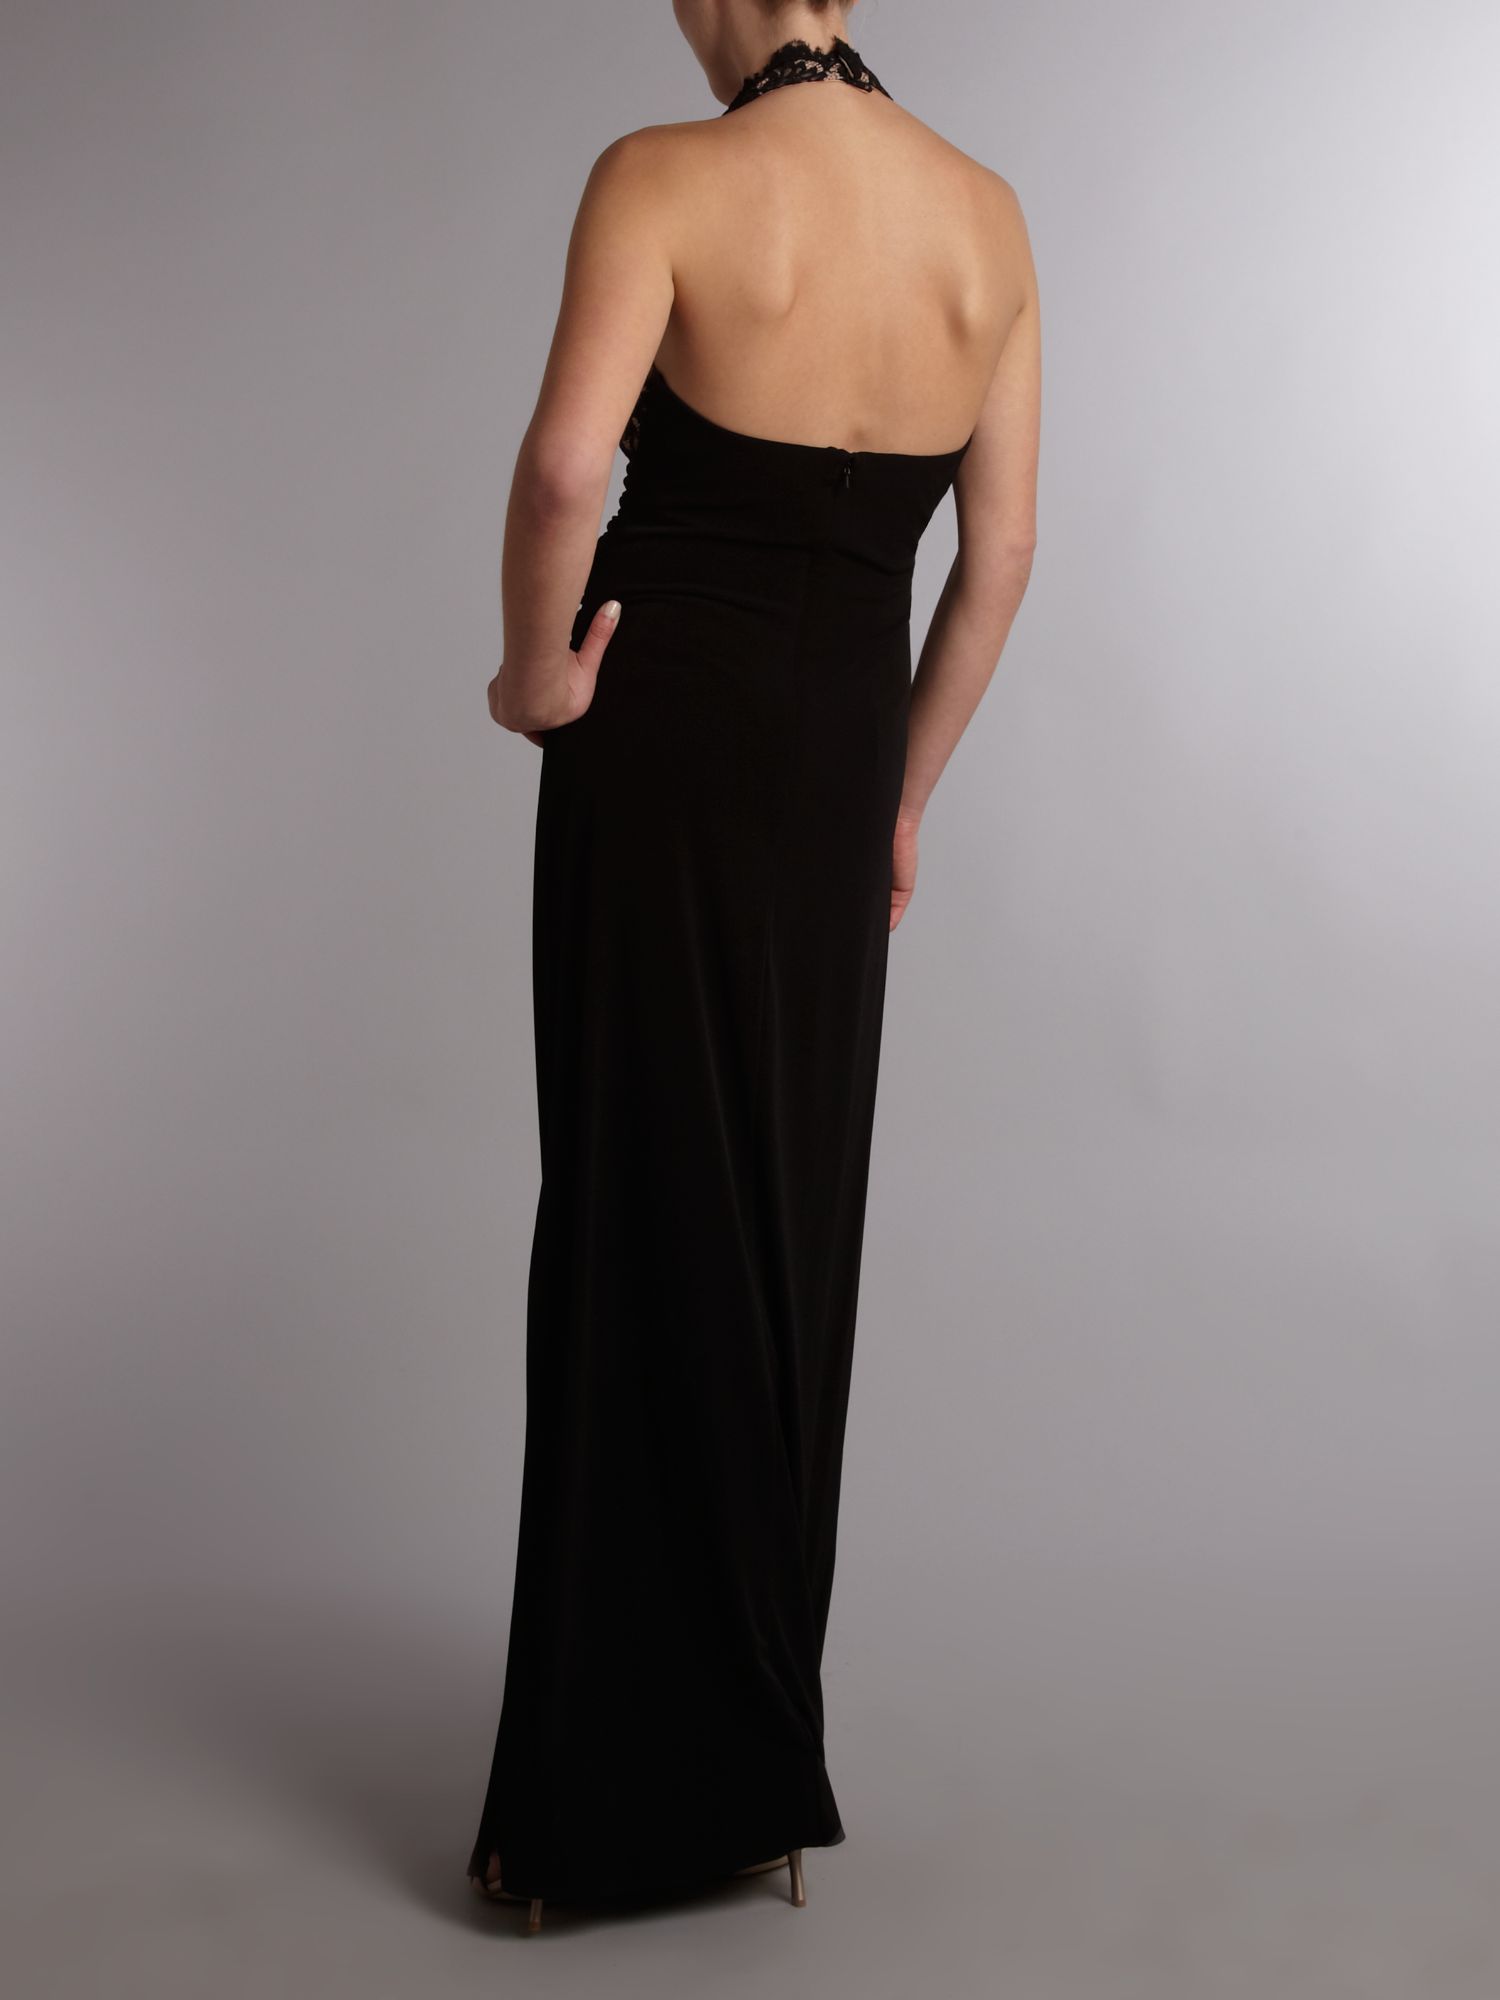 Js collections Matt Long Jersey Halter Dress in Black | Lyst